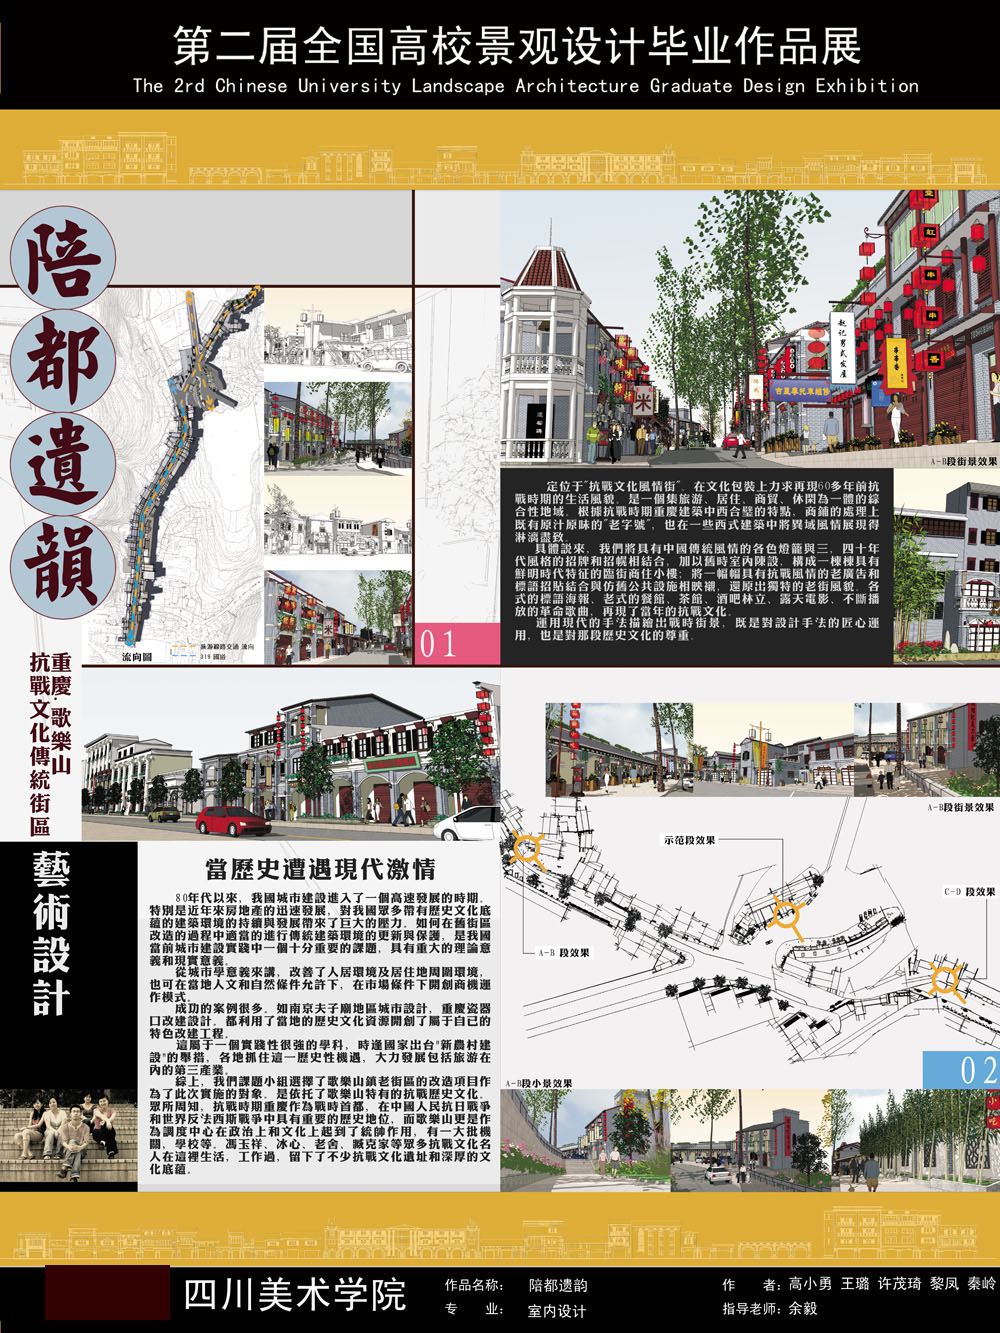 陪都遗韵——重庆歌乐山抗战传统文化街区艺术设计-1